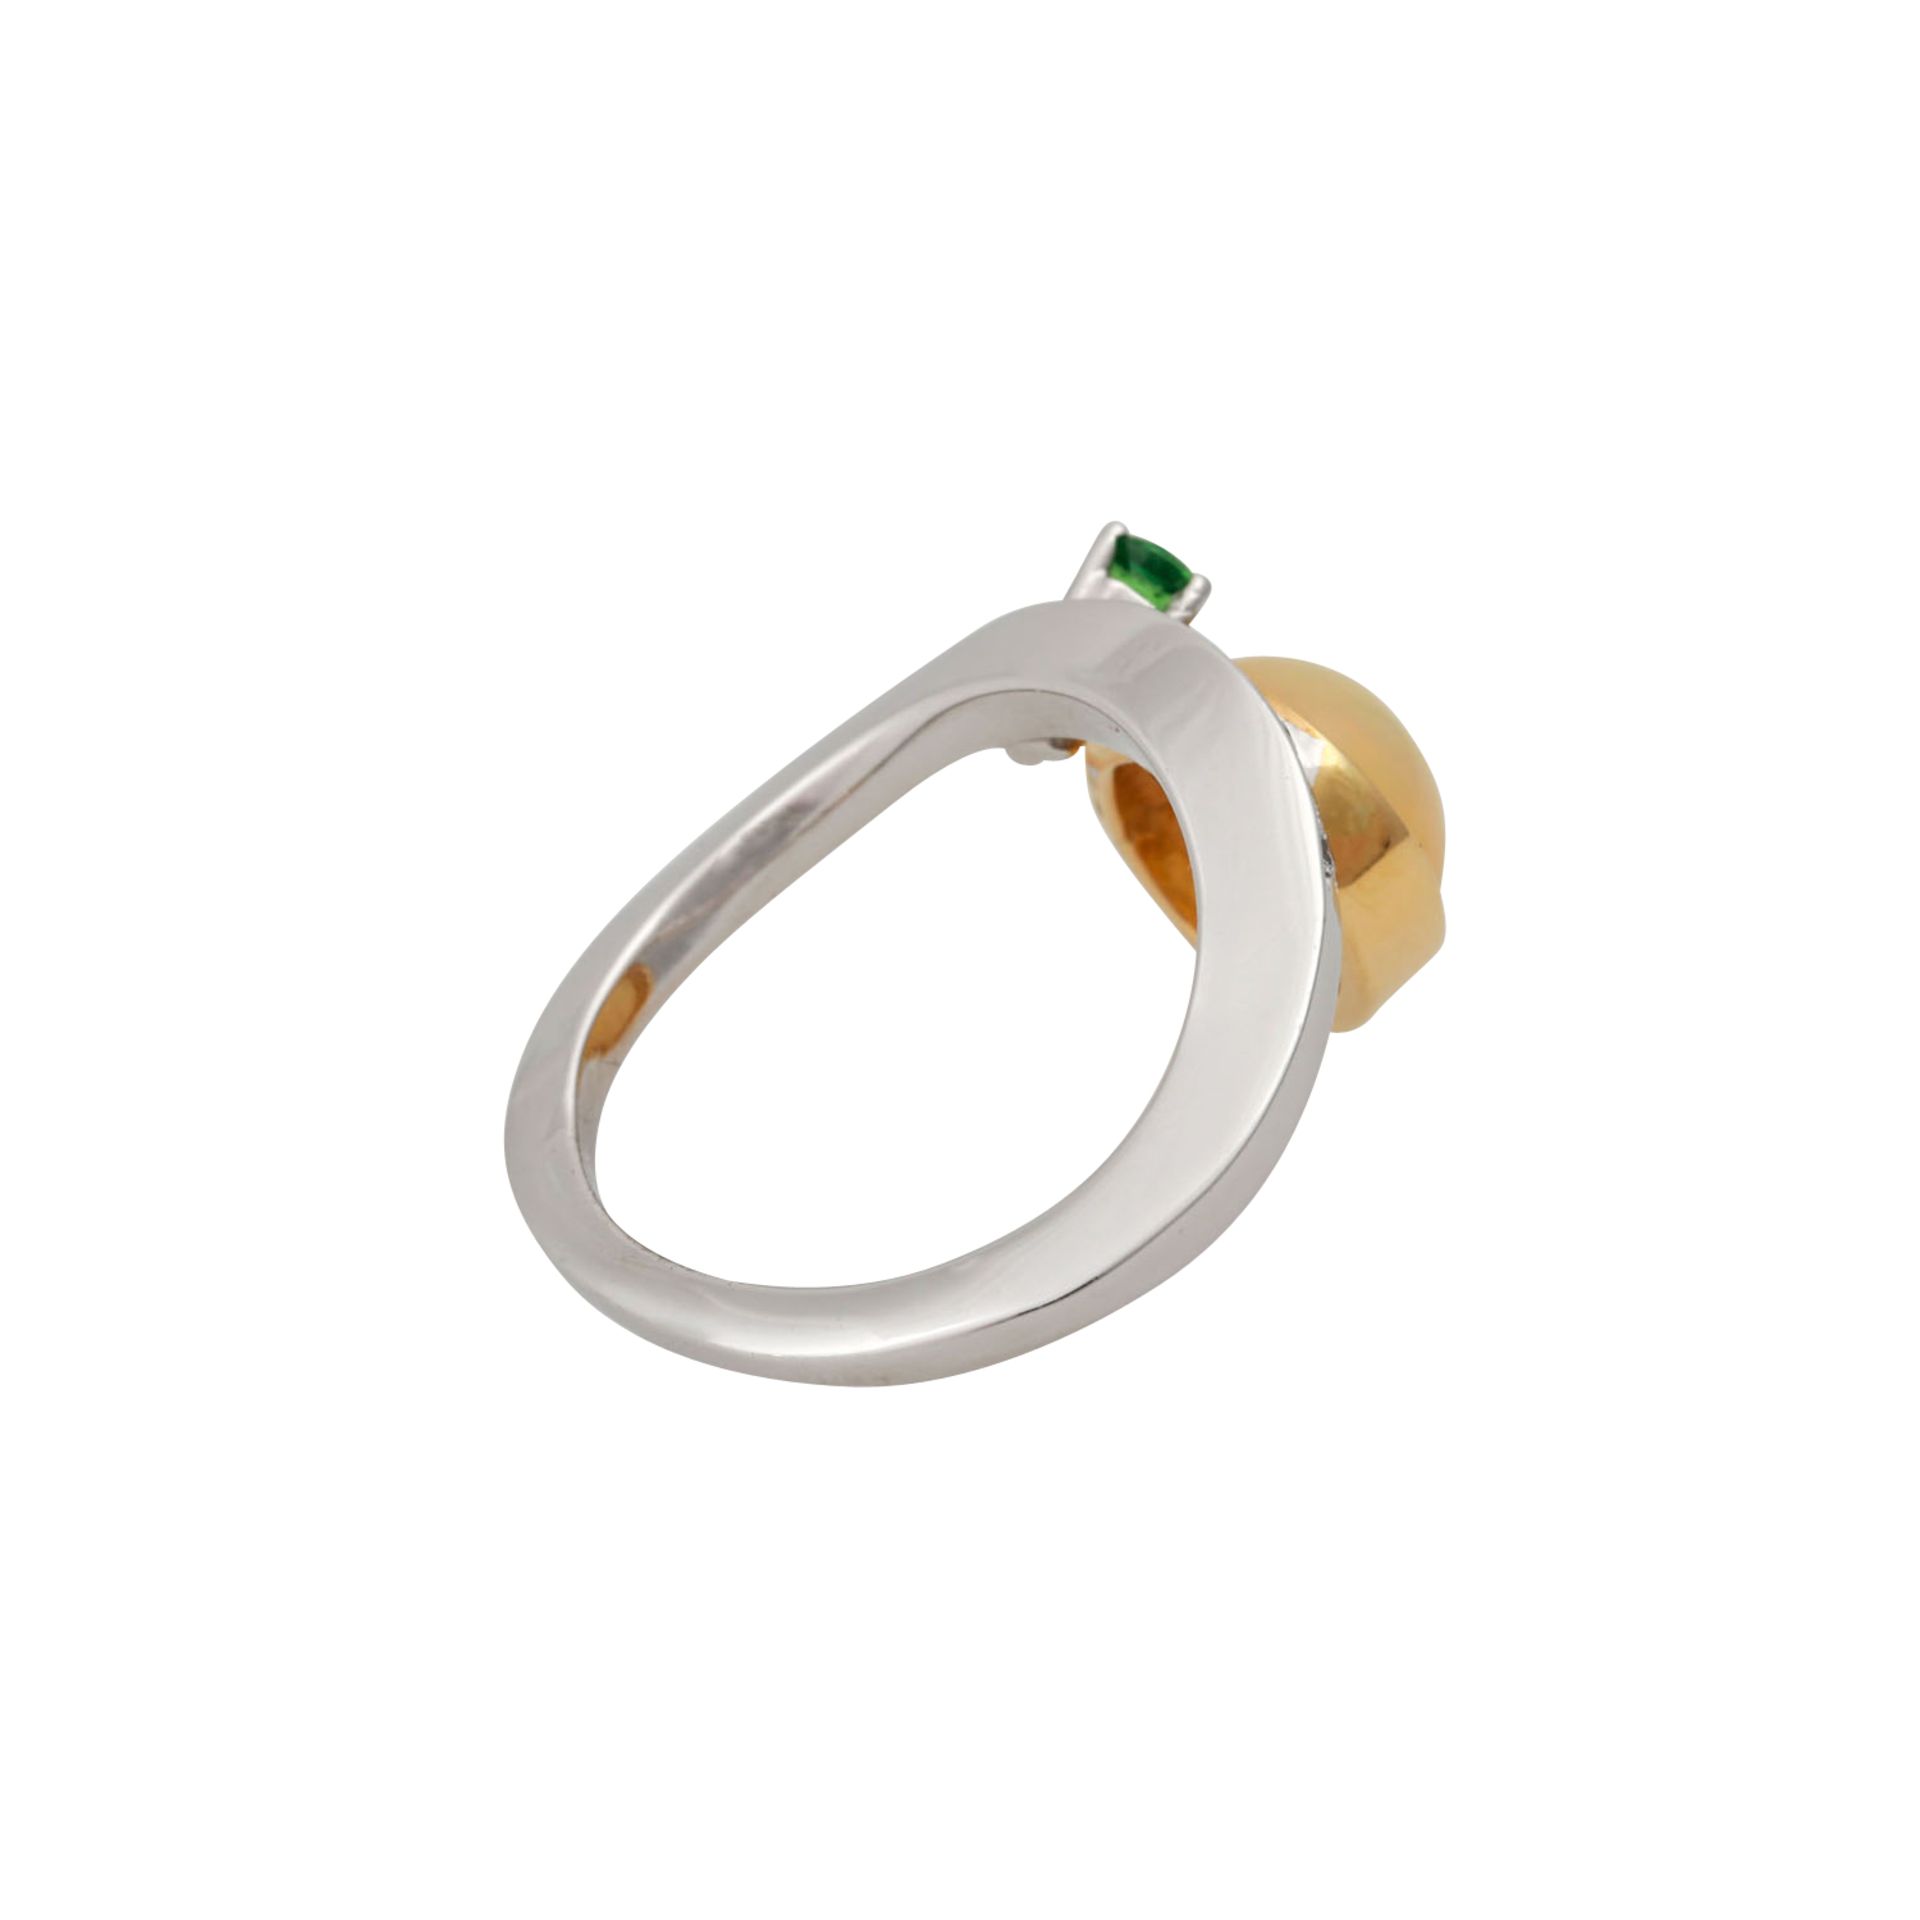 Ring mit ovalem Opal, 7 Brillanten, zus. ca. 0,18 ctund kl. grünem Schmuckstein, NP: 990 €, GG/WG - Bild 3 aus 4